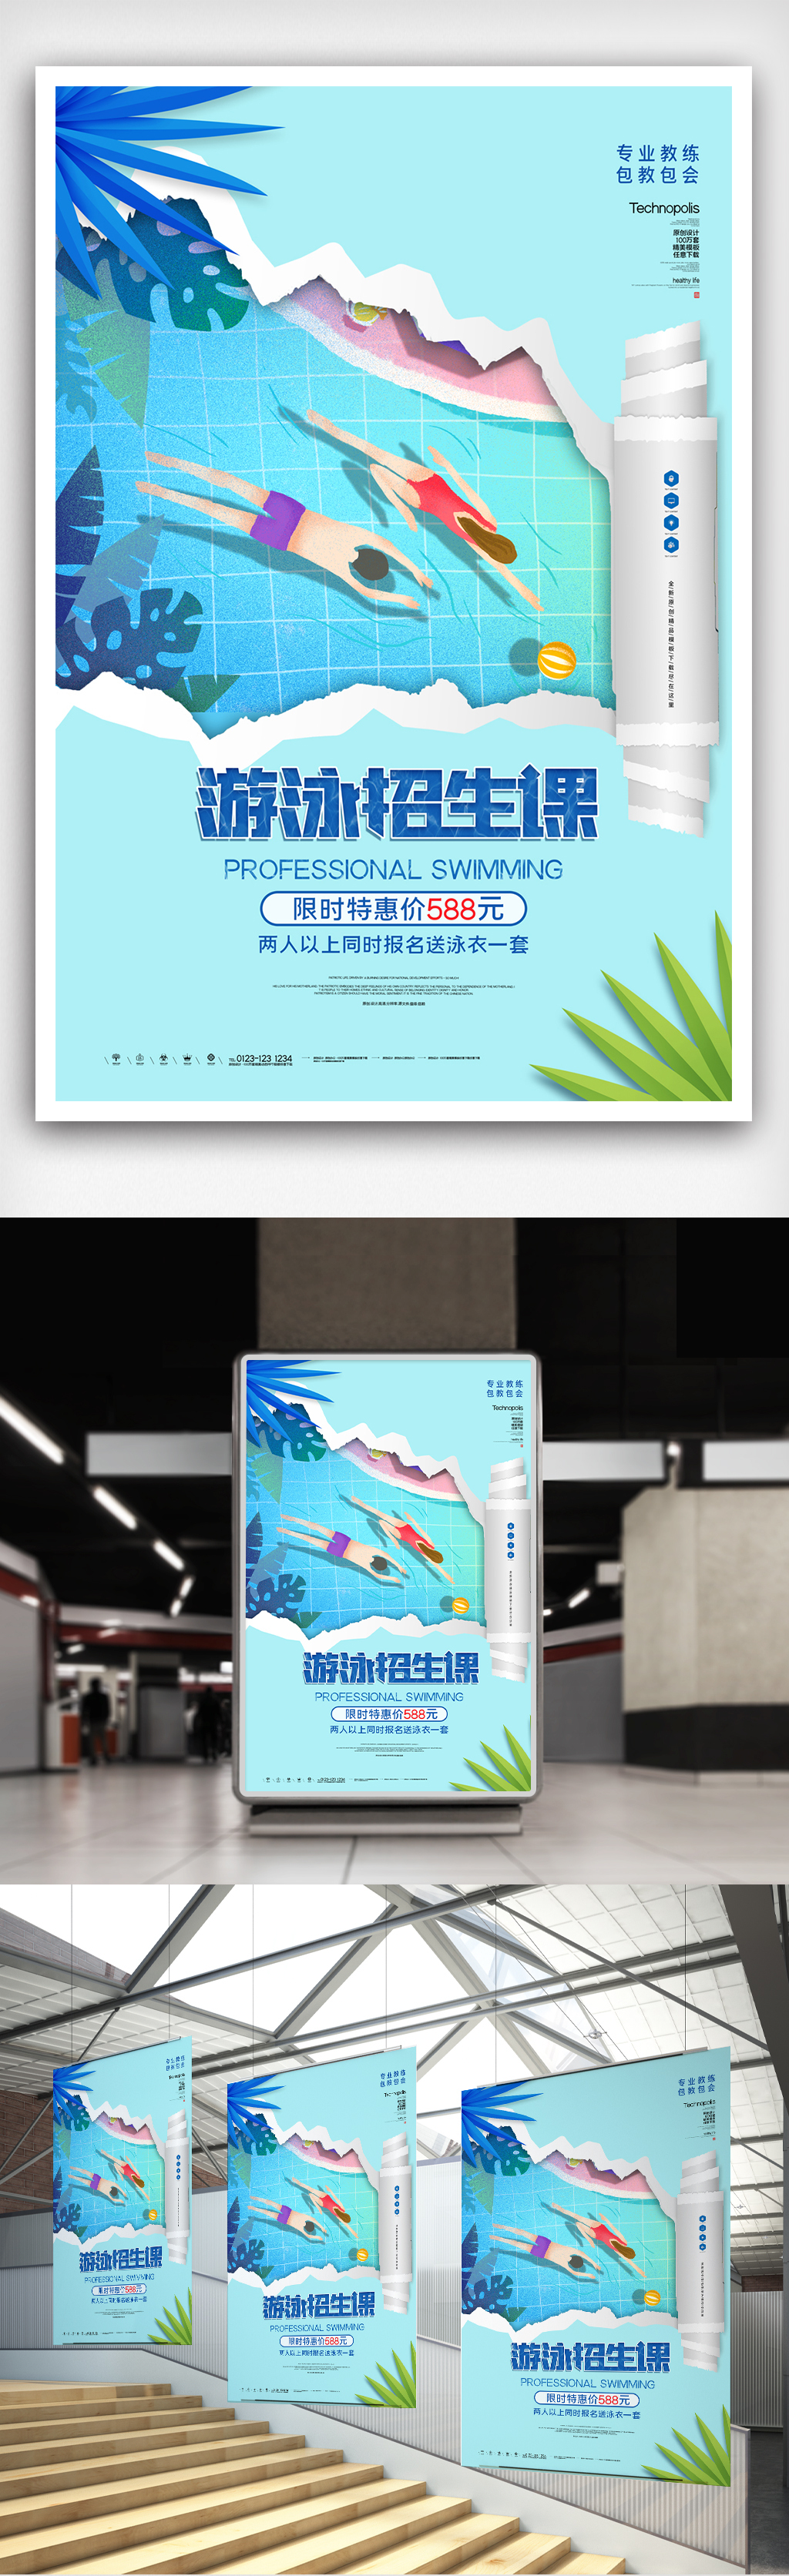 暑期游泳招生创意时尚宣传海报模板设计图片